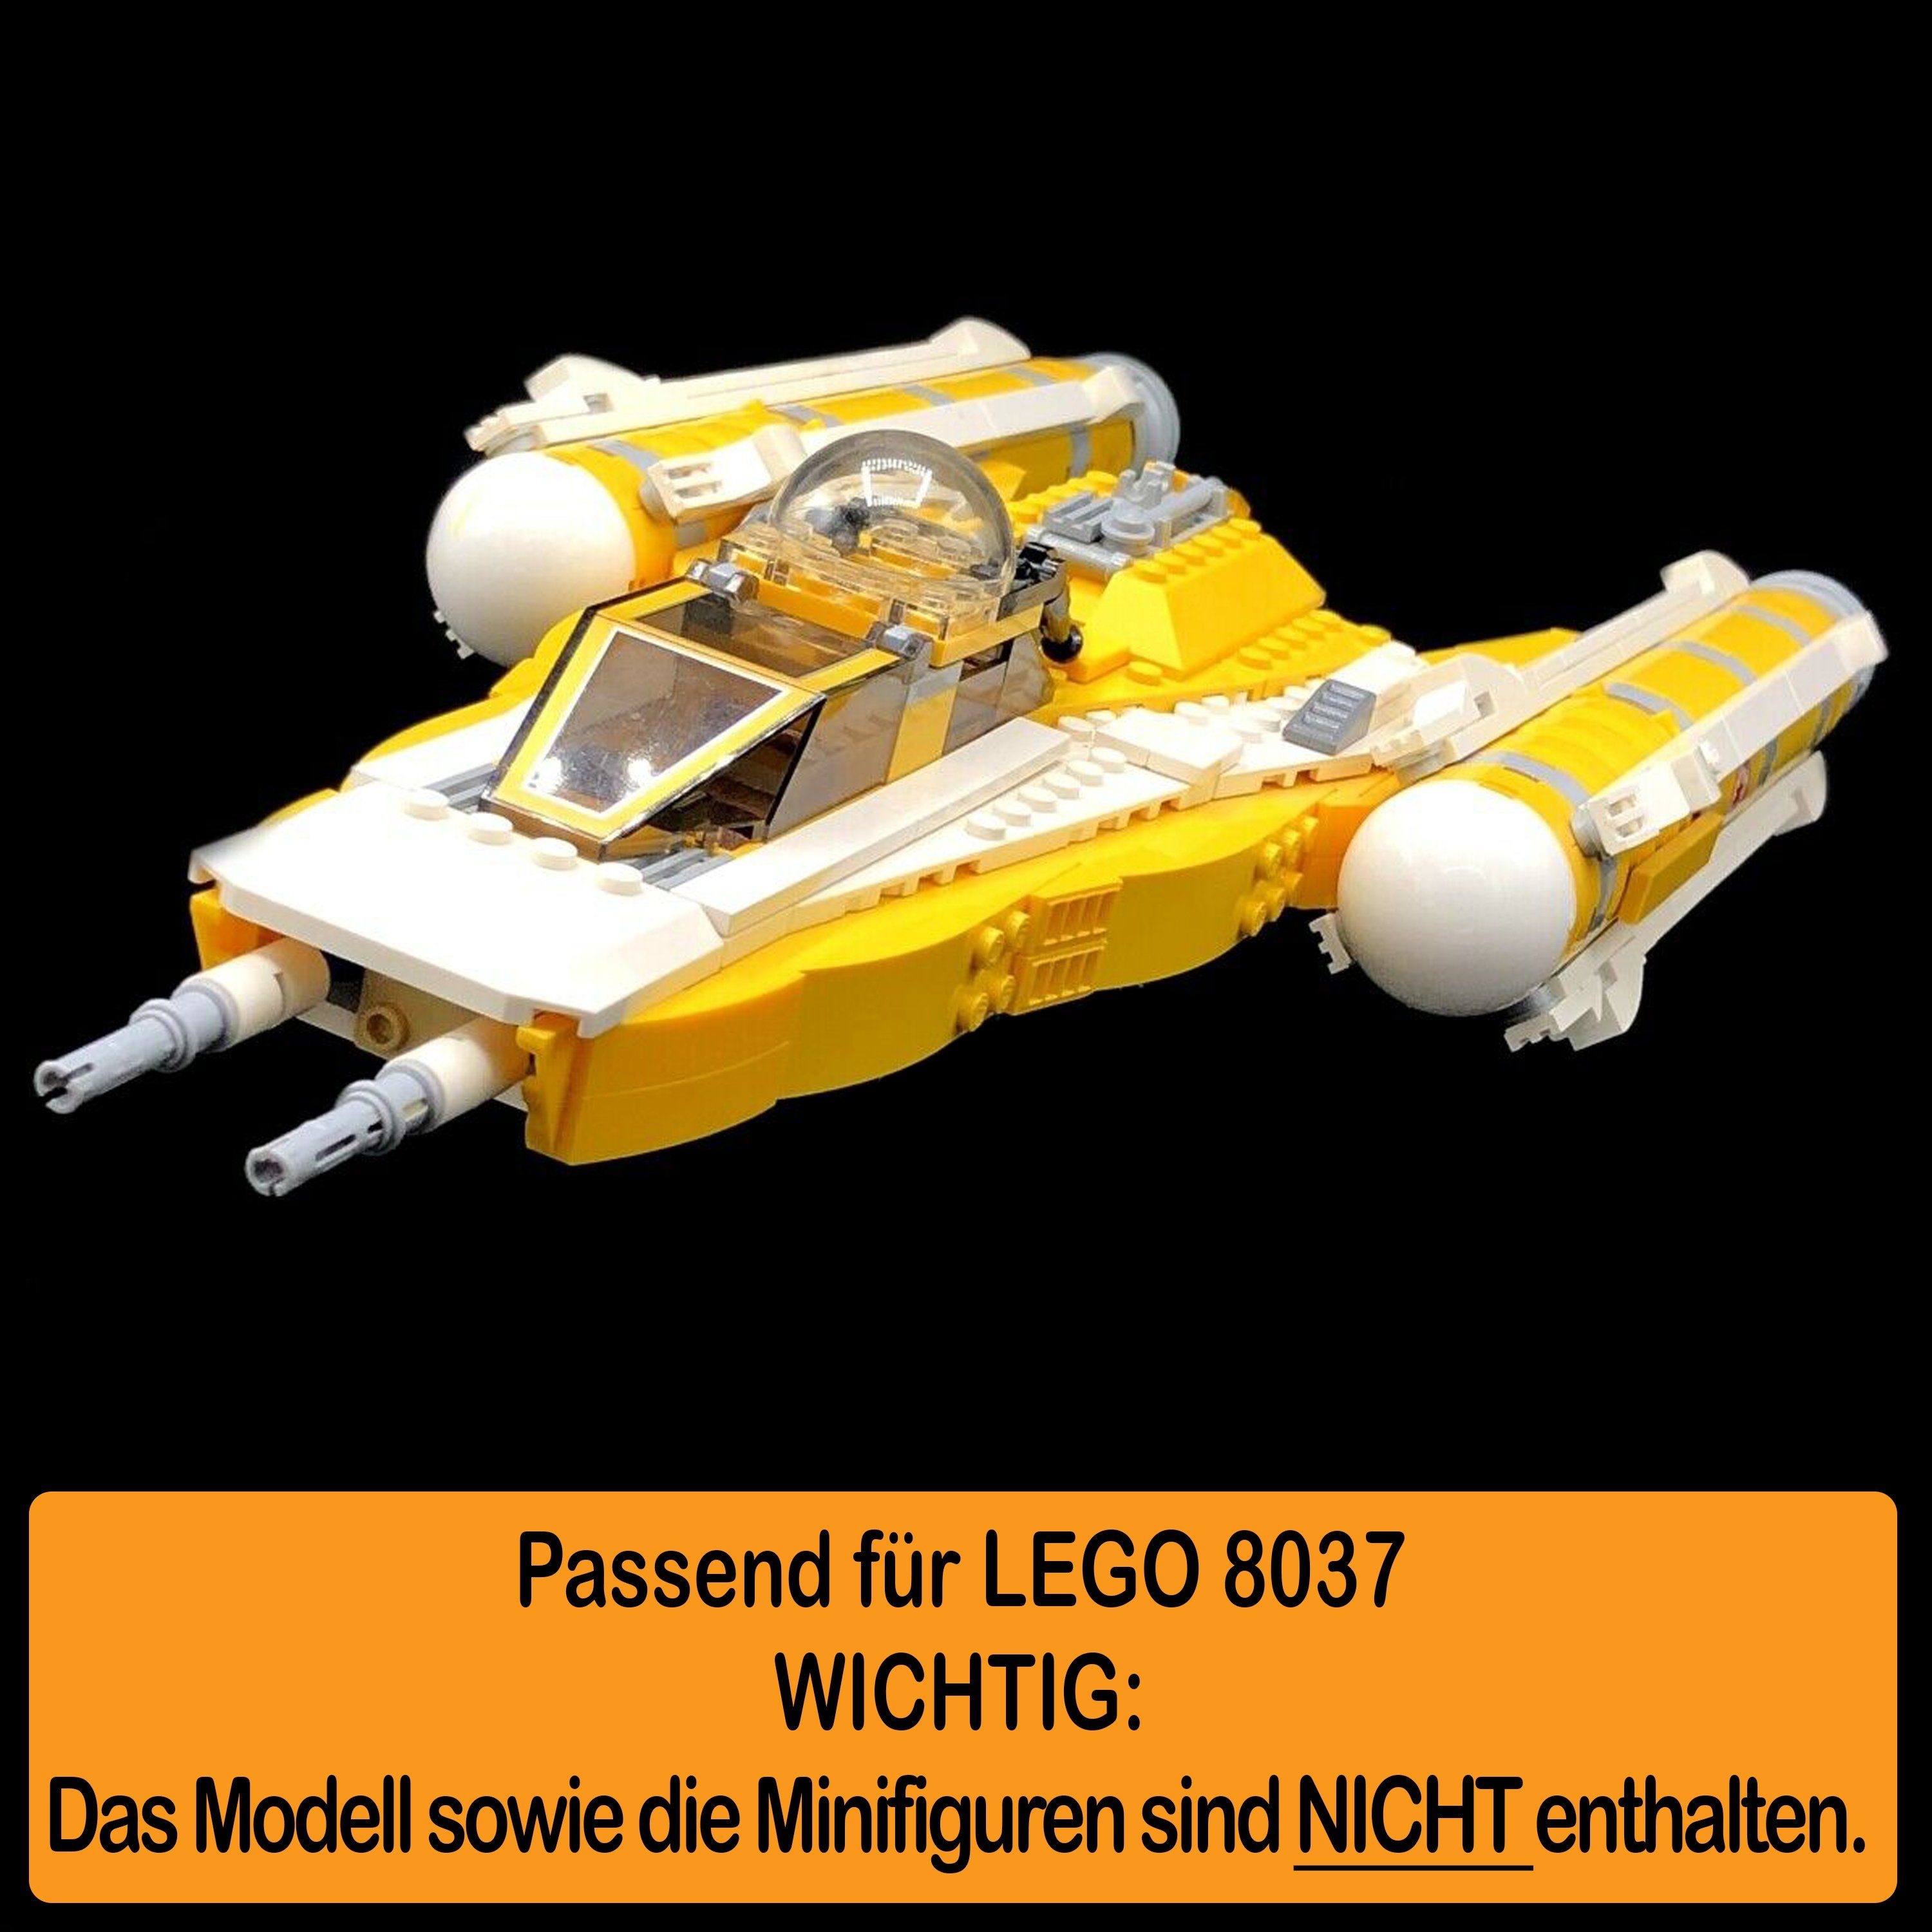 zusammenbauen), 8037 Starfighter und Positionen AREA17 Winkel Y-Wing Anakin's Acryl (verschiedene in Germany zum Display selbst Standfuß Stand für LEGO 100% einstellbar, Made